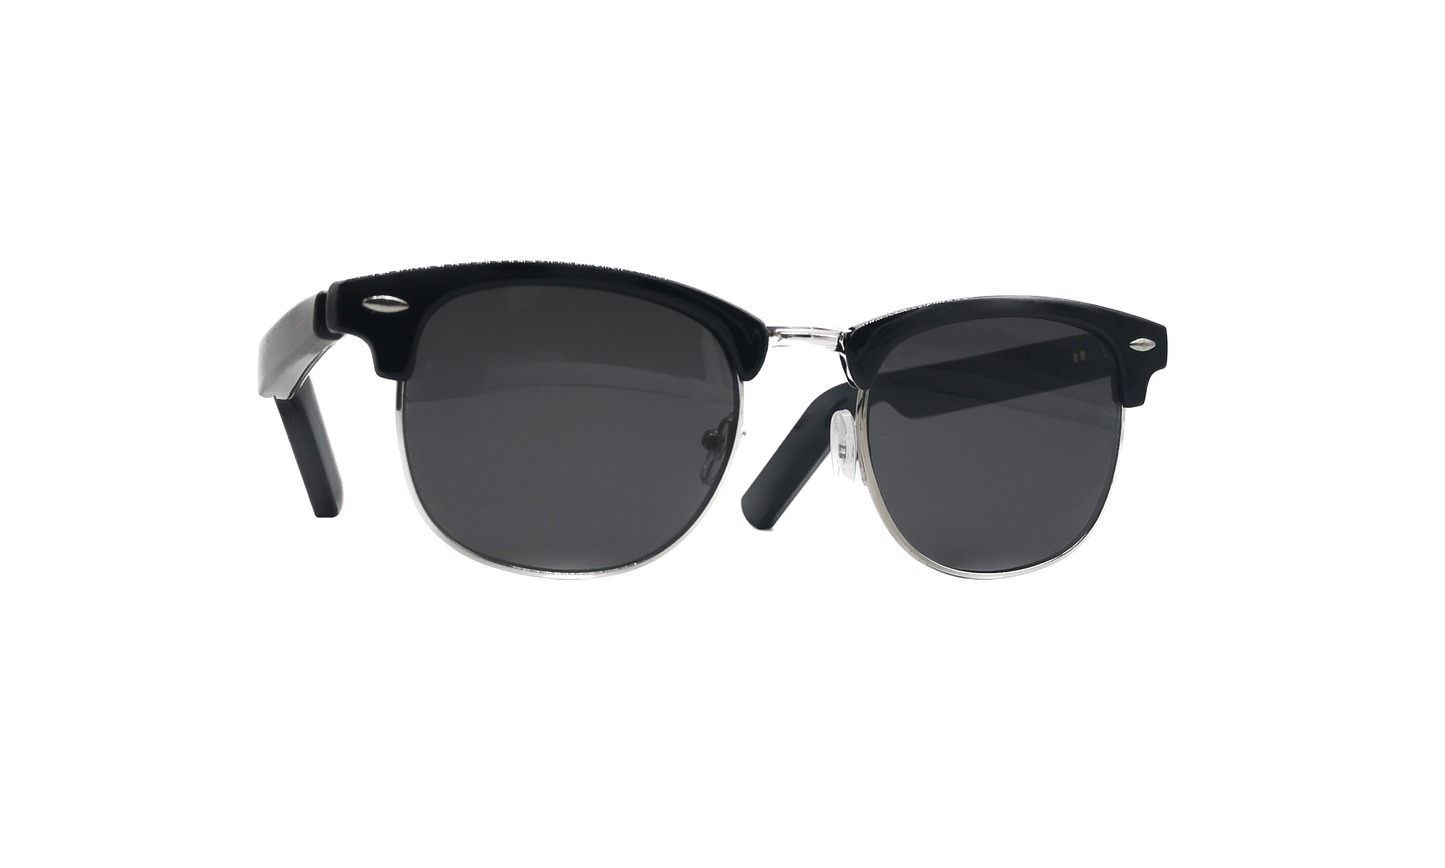 Sentro Smart Sunglasses